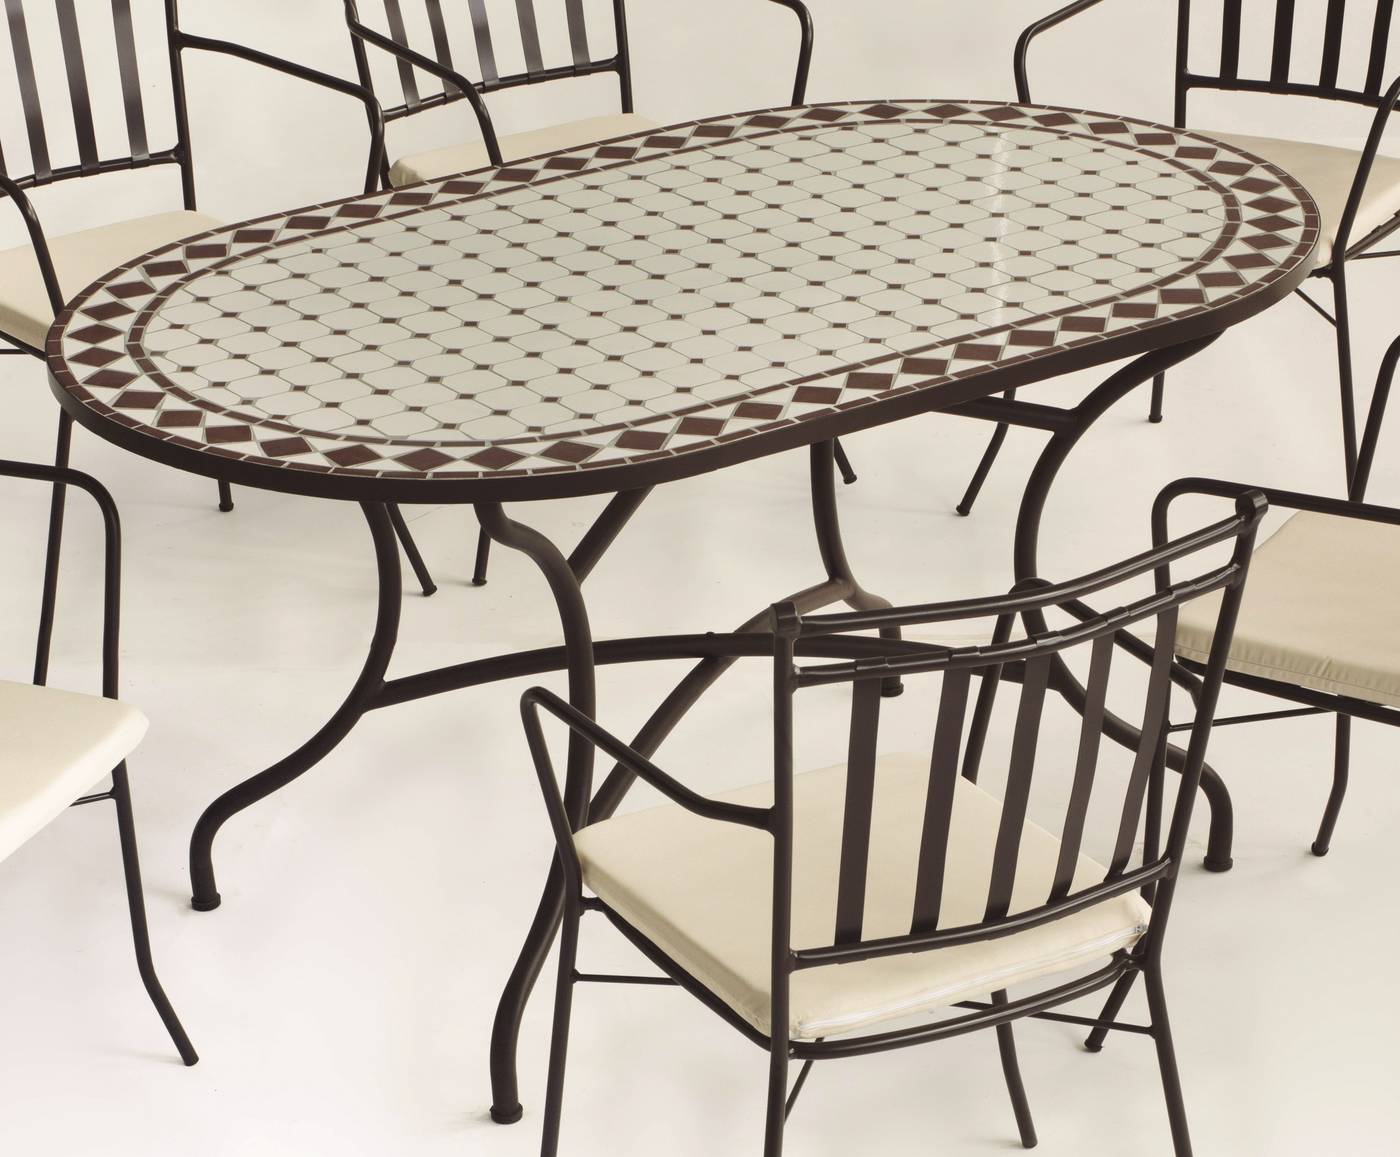 Conjunto Mosaico Sambala-Shifa - Conjunto de forja color bronce: mesa con tablero mosaico de 150 cm + 6 sillones con cojines asiento.